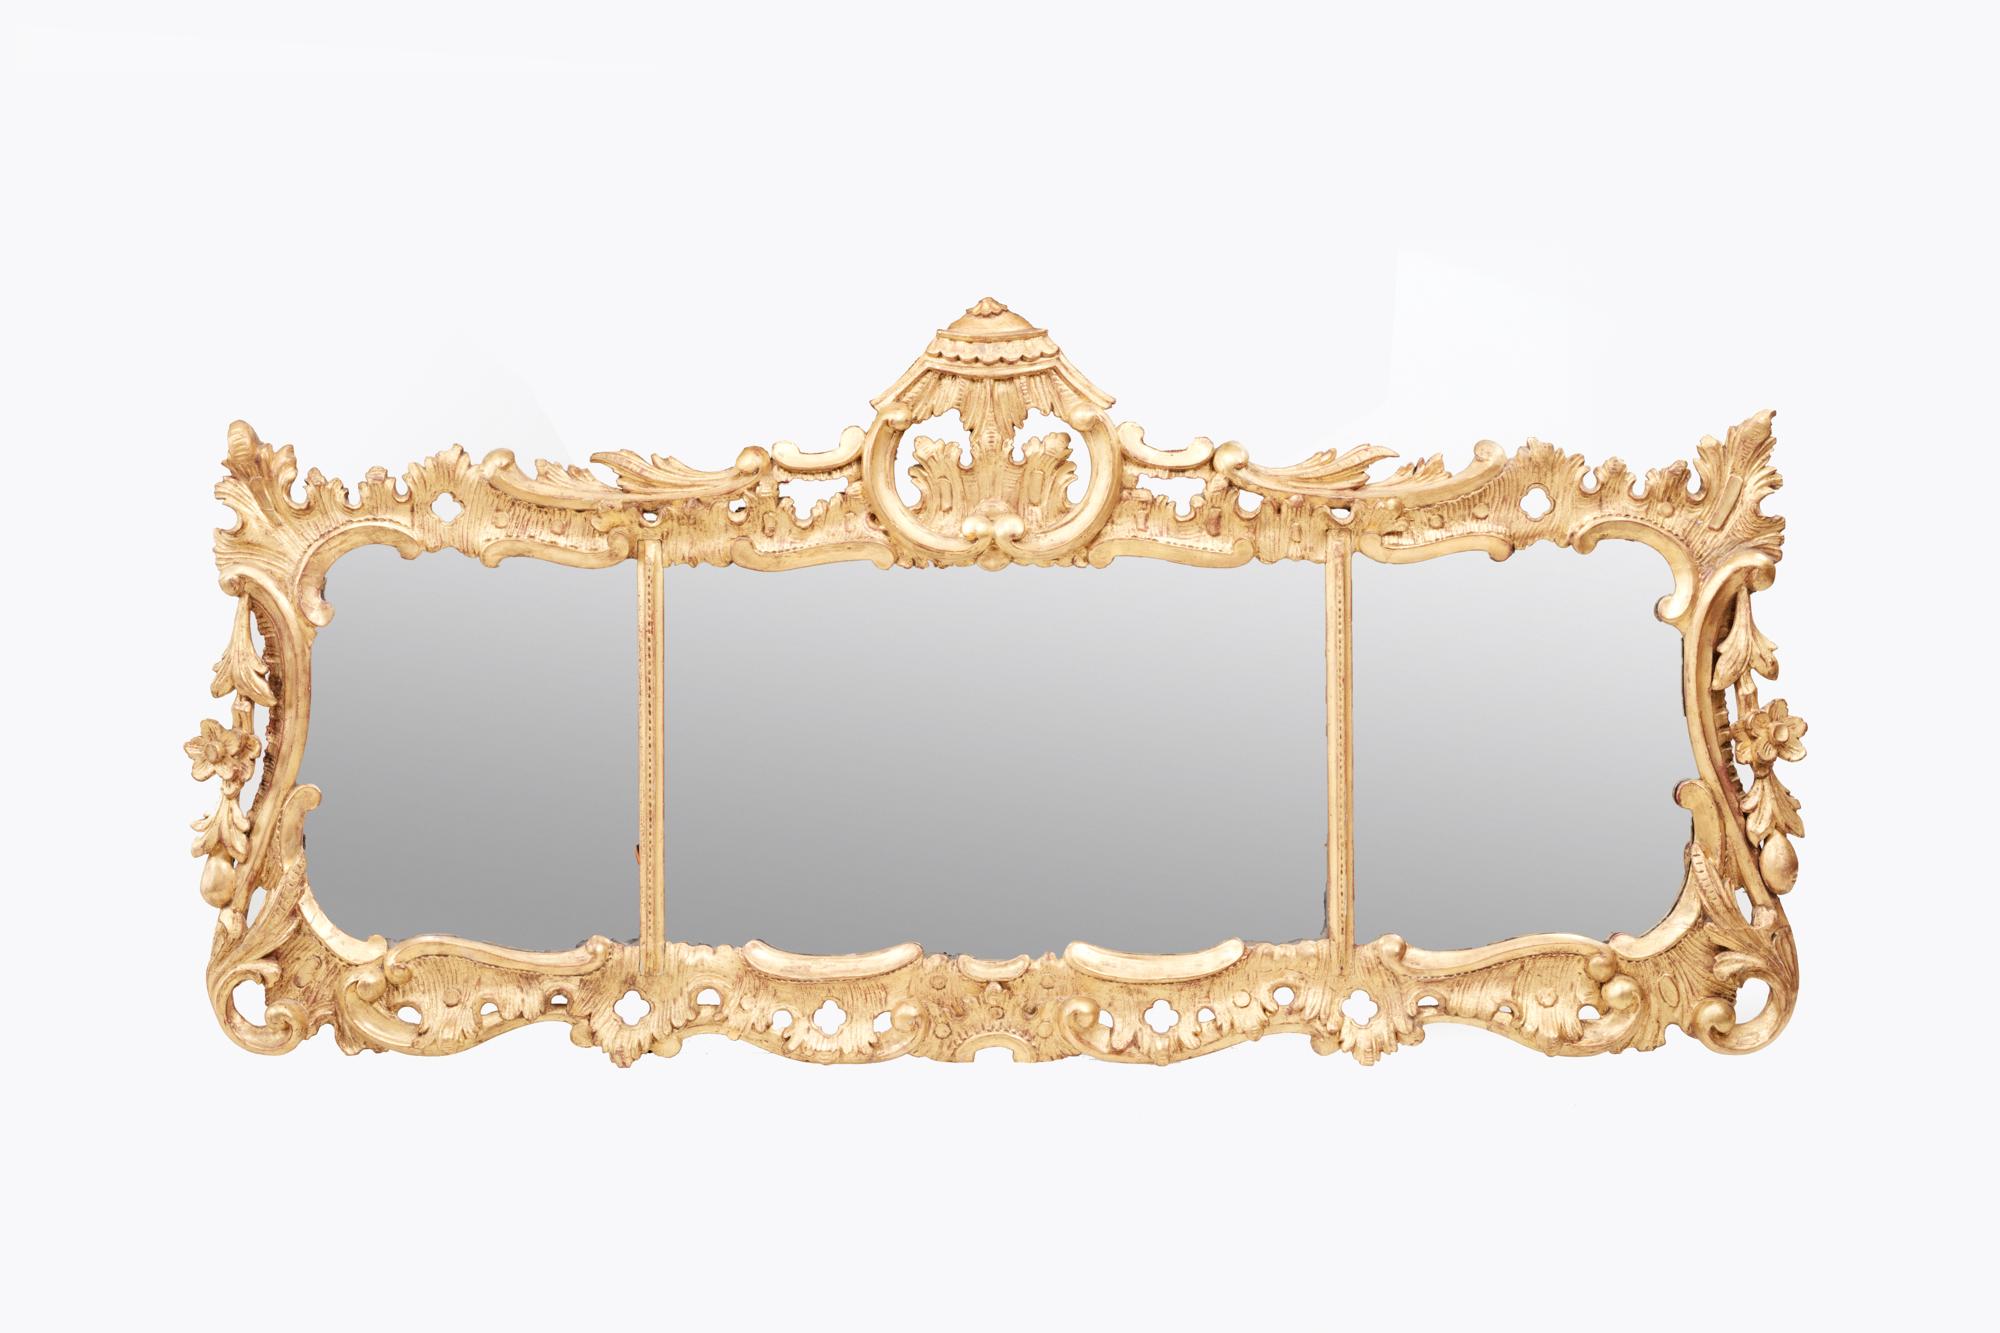 Vergoldeter Obermantelspiegel aus dem 18. Jahrhundert mit zentraler stilisierter Pagodenverzierung. Die drei Tafeln sind durch einfache vergoldete Perlenstäbe voneinander getrennt und von einem verzierten, vergoldeten Holzrahmen mit Akanthusblatt-,